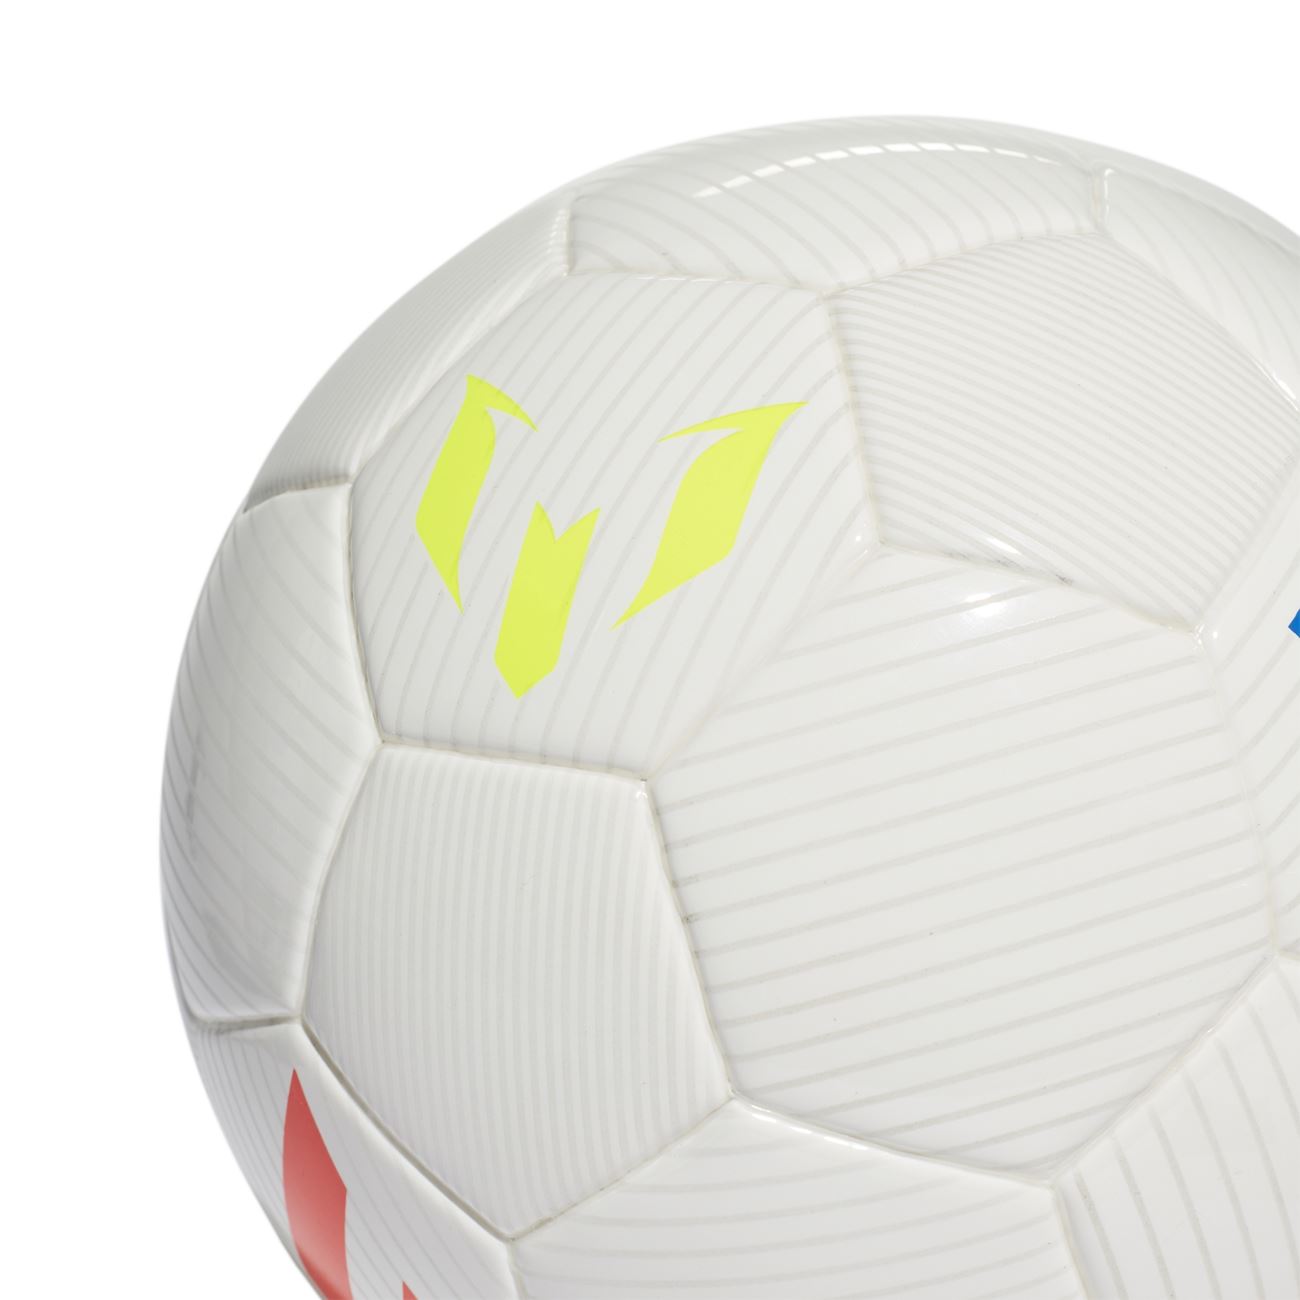 Какой мяч в мини футболе. Messi adidas футбольный мяч Mini. Мяч адидас Месси. Месси с мячом. Мяч футбольный адидас размер 1 мини.